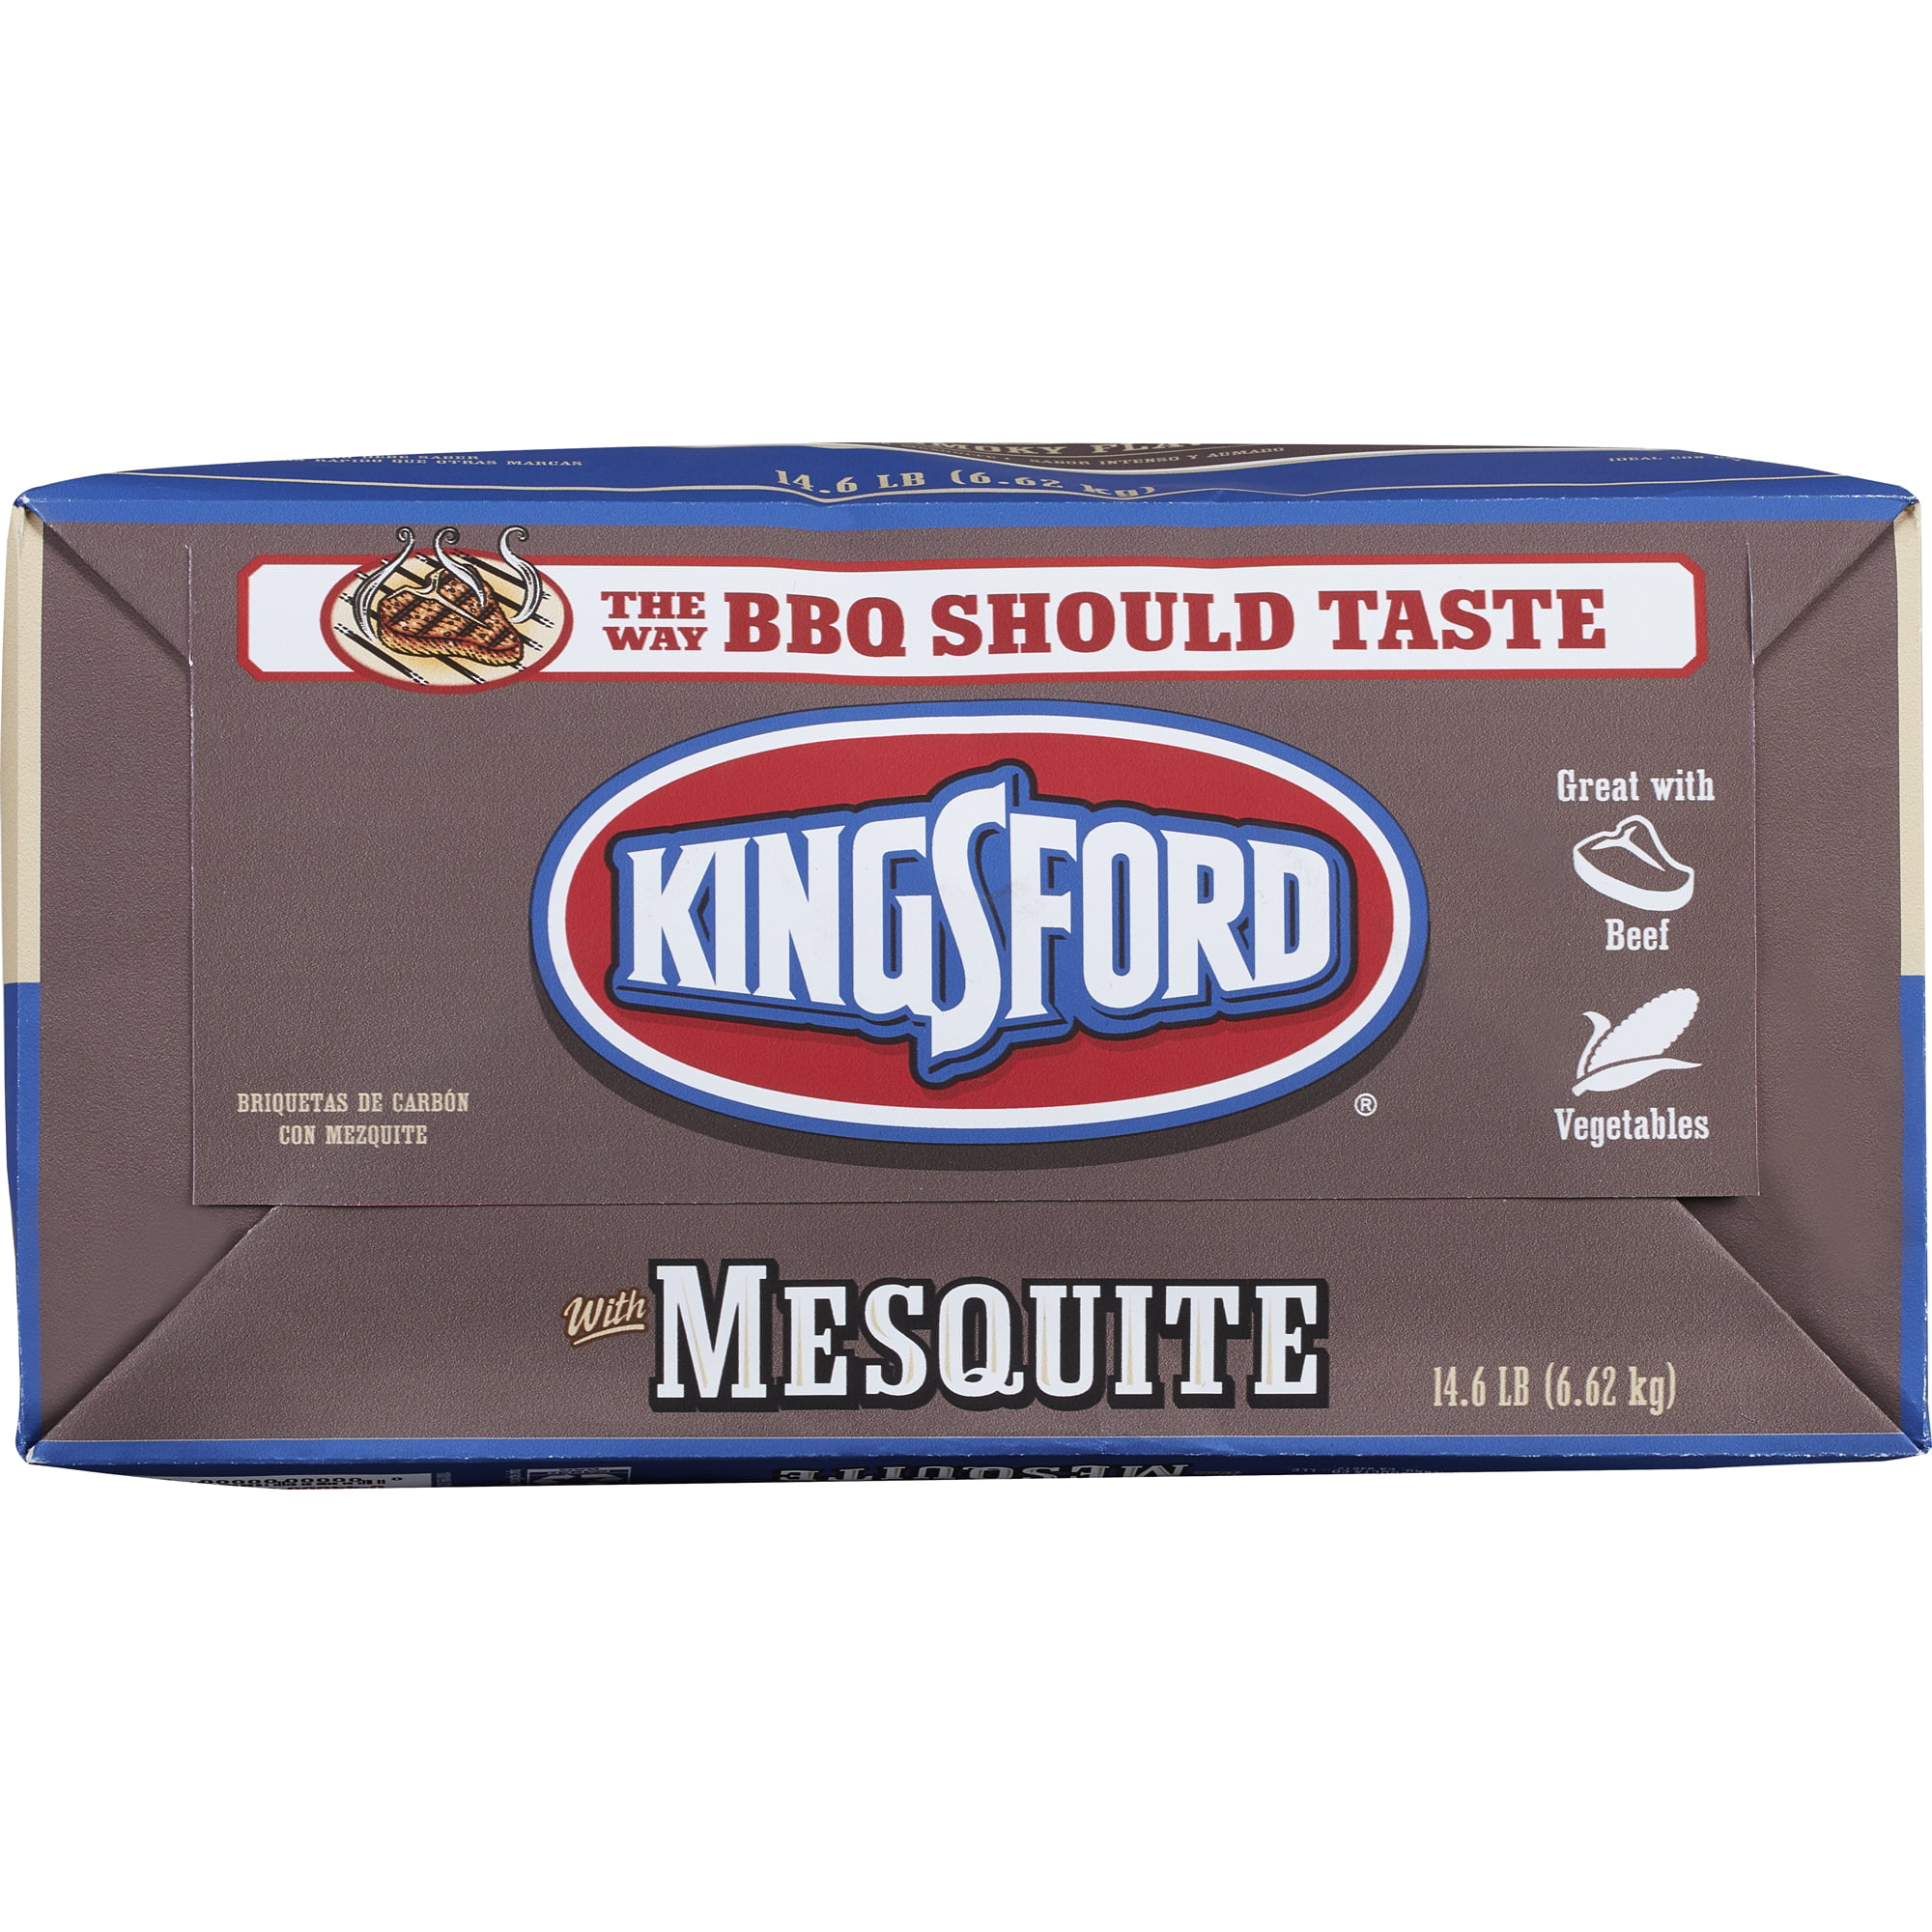 Kingsford Charcoal 14.6LB Mesquite Briquette